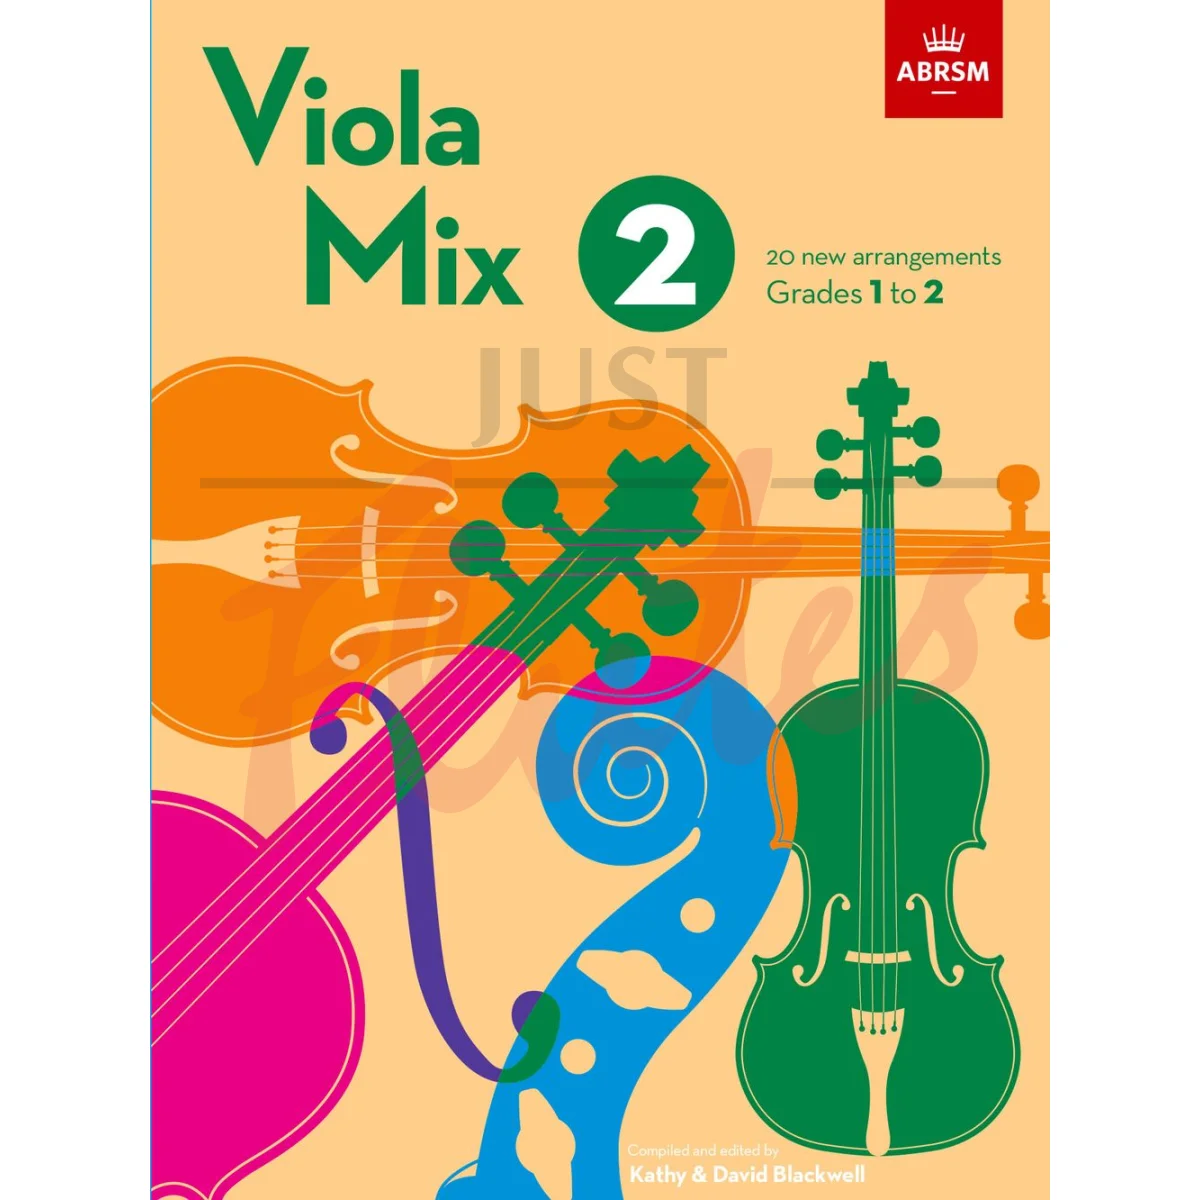 Viola Mix 2